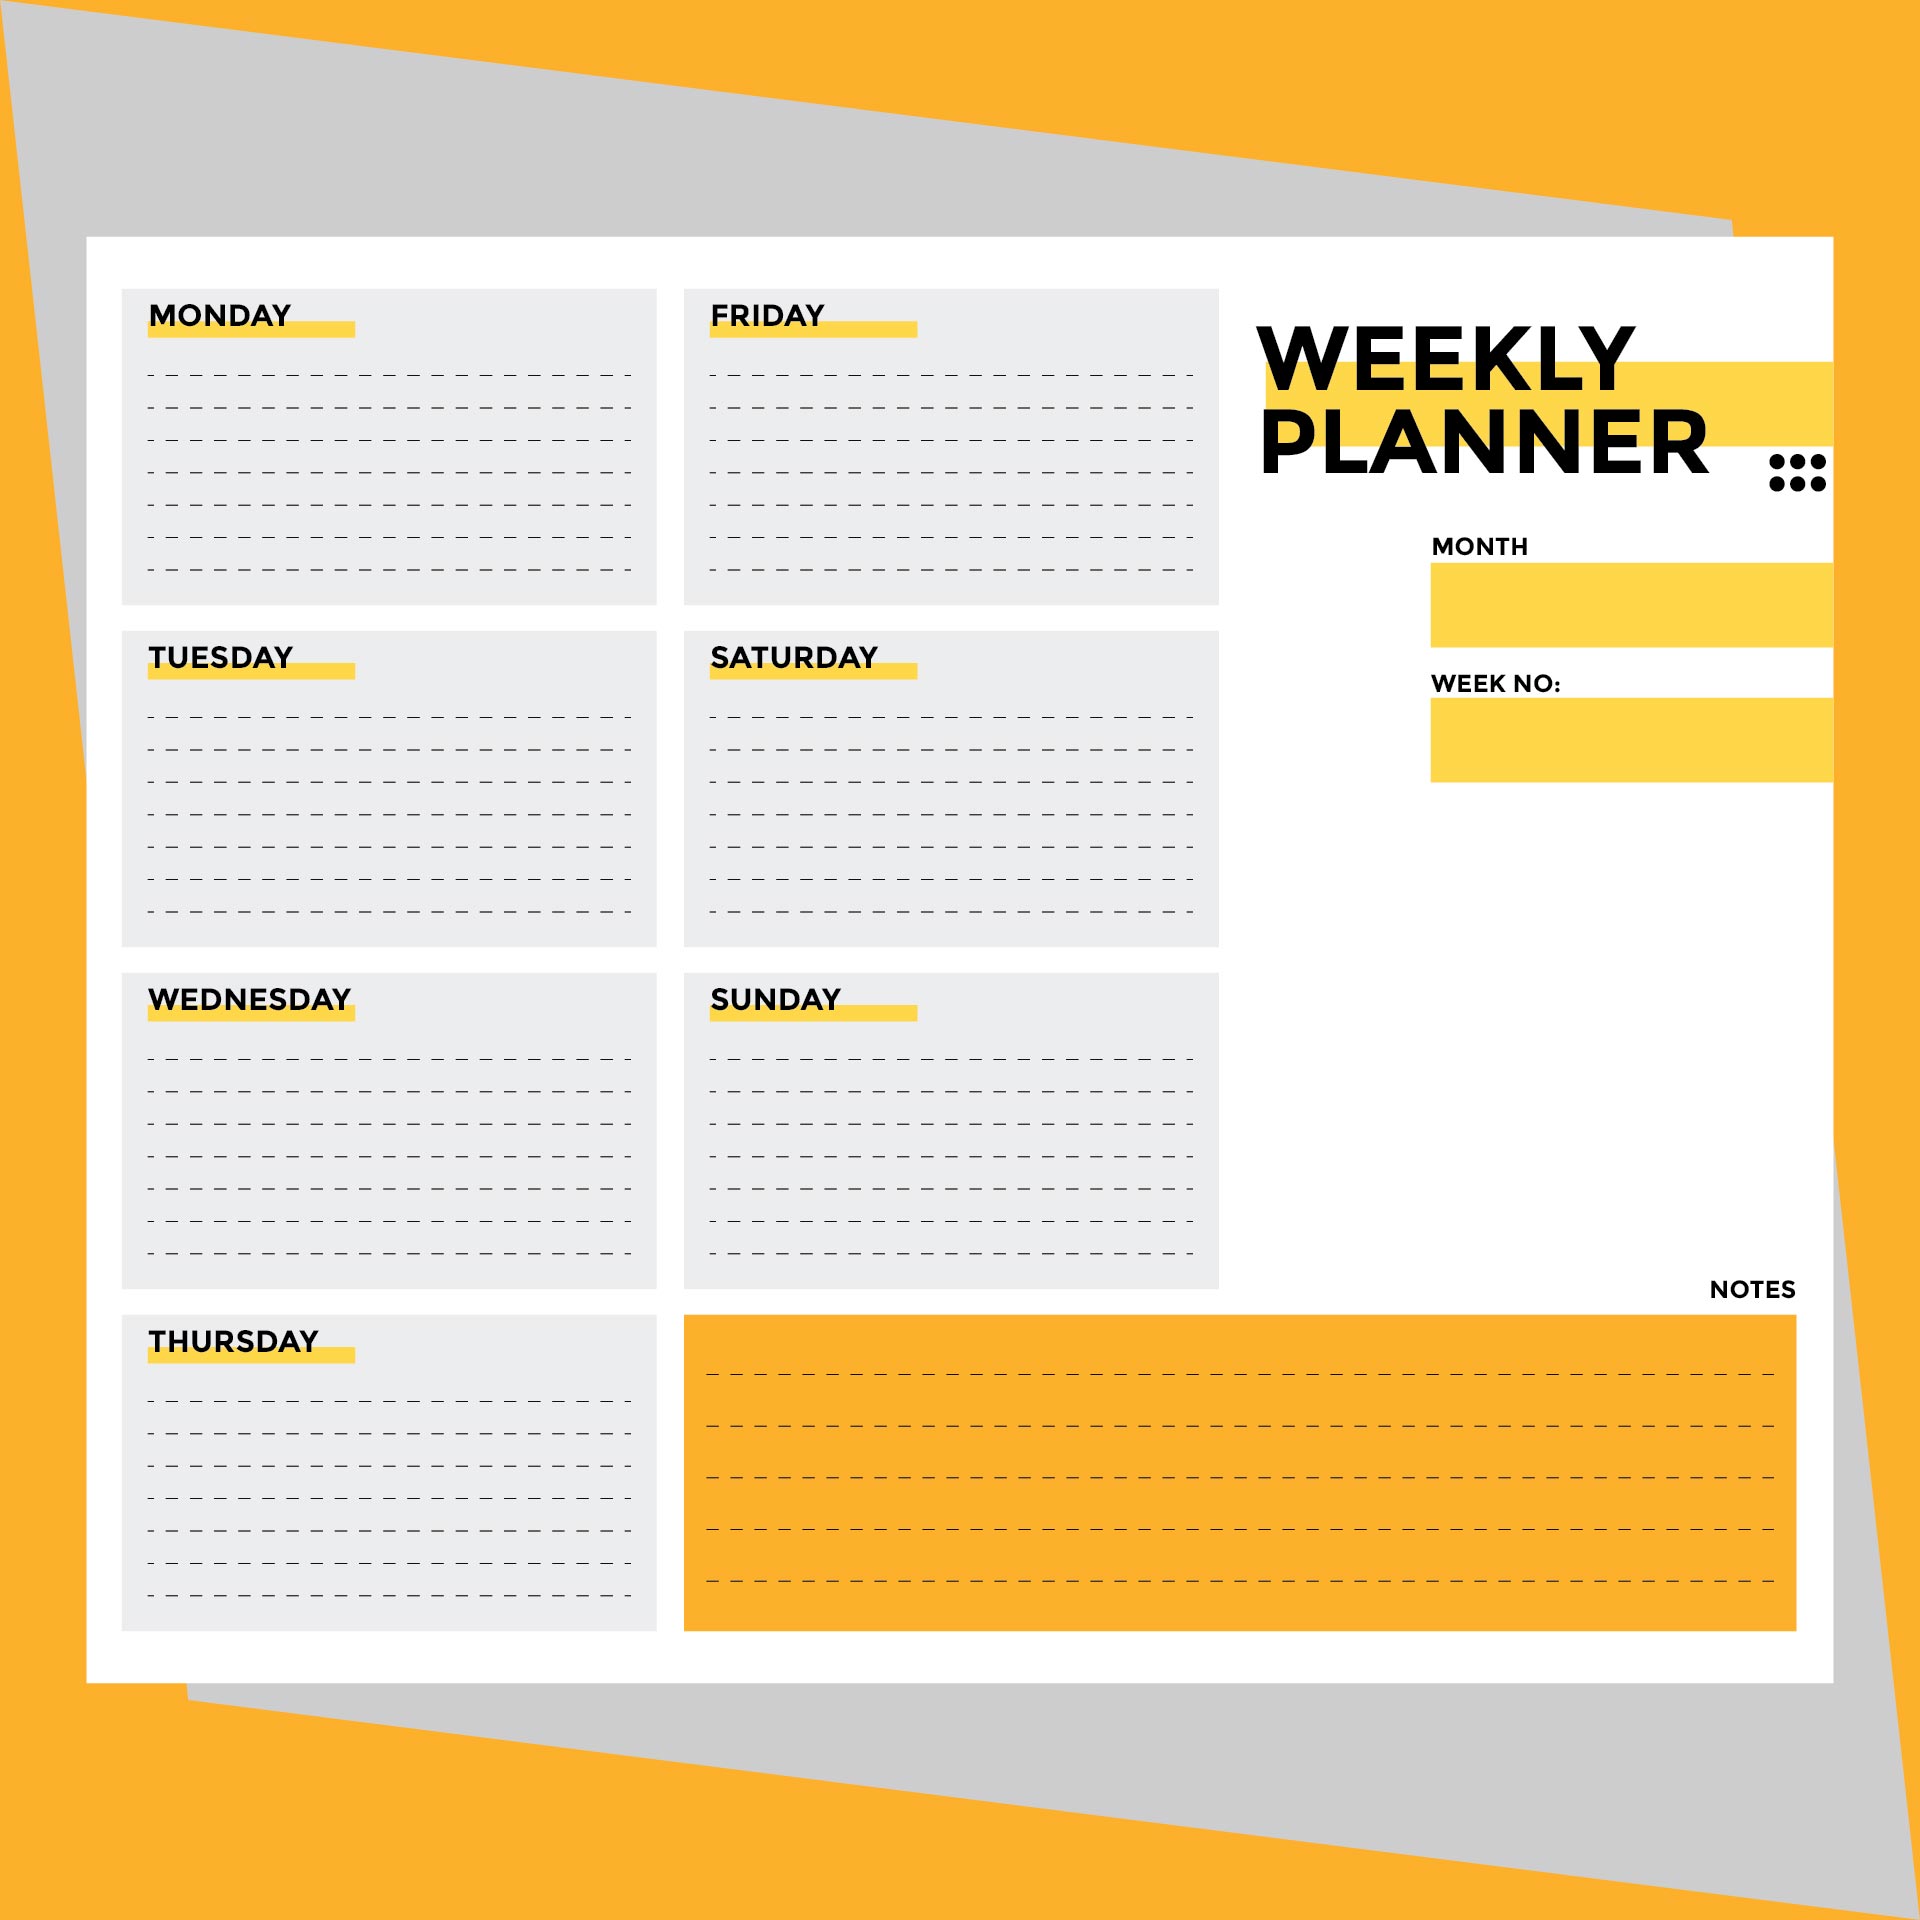 9-best-images-of-weekly-planner-printable-pdf-weekly-planner-template-pdf-free-printable